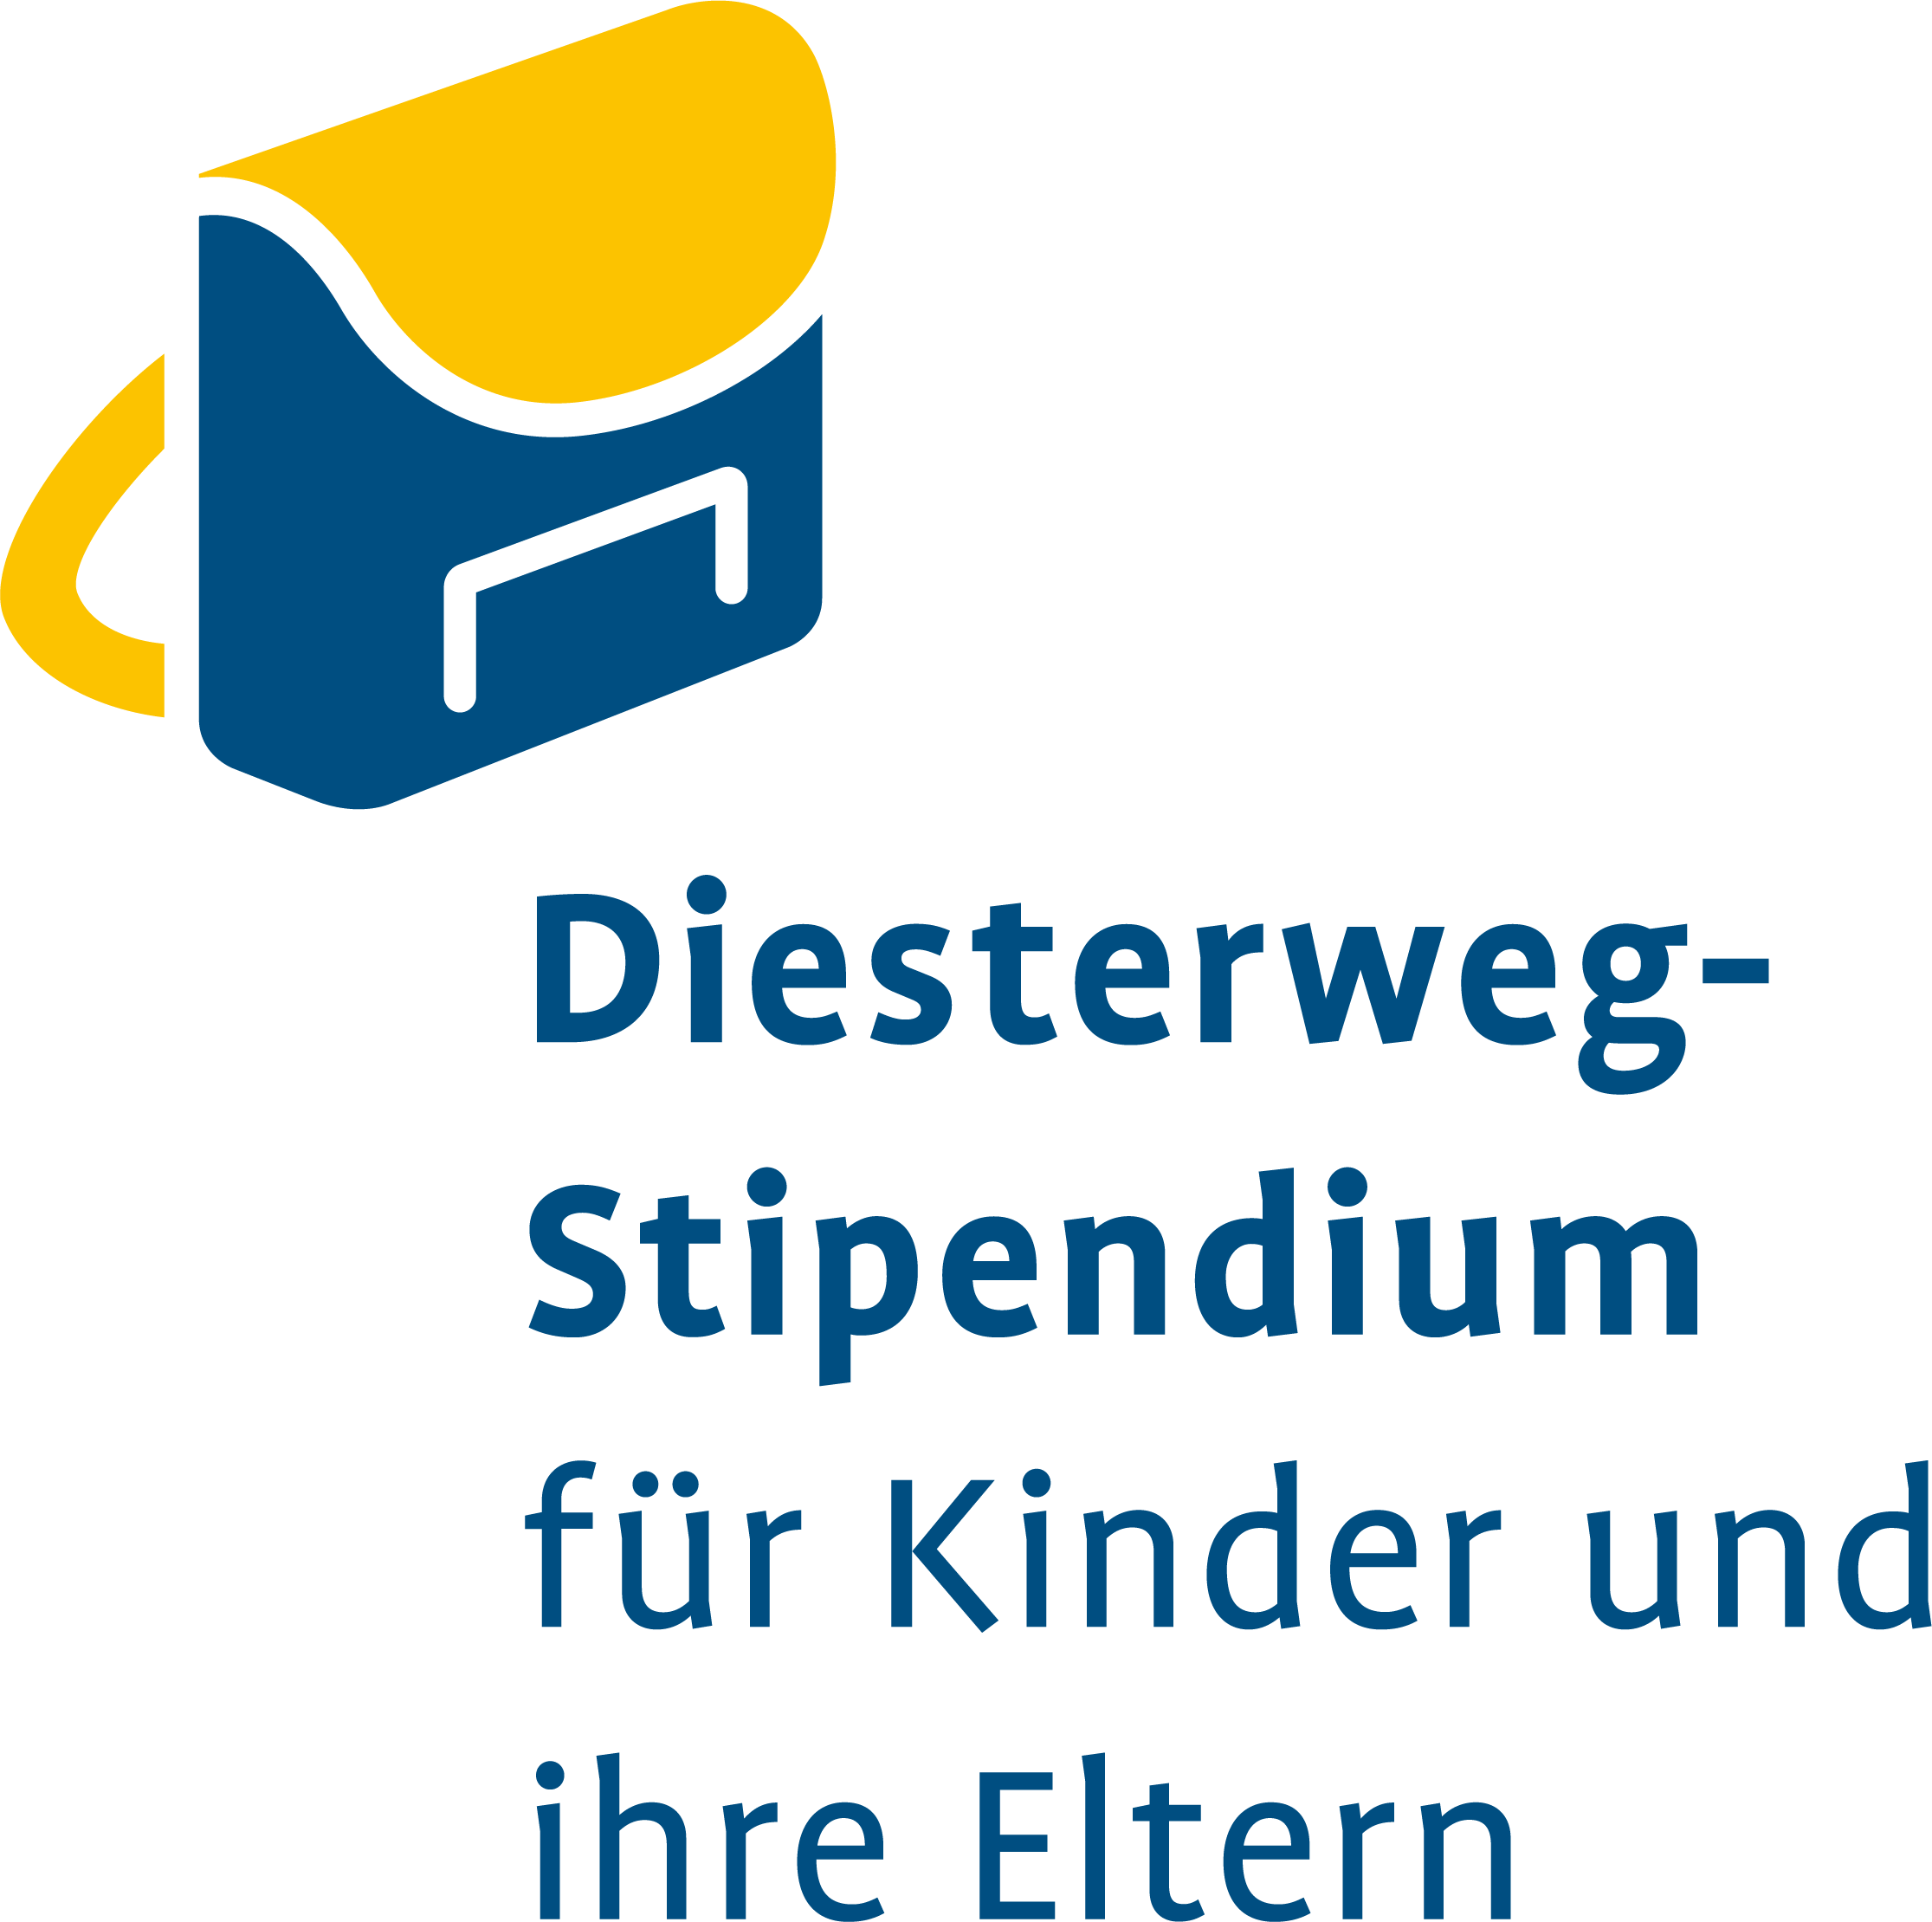 Das Logo des Diesterweg-Stipendiums für Kinder und ihre Eltern zeigt einen blauen Ranzen mit einem gelben Träger und Deckel.